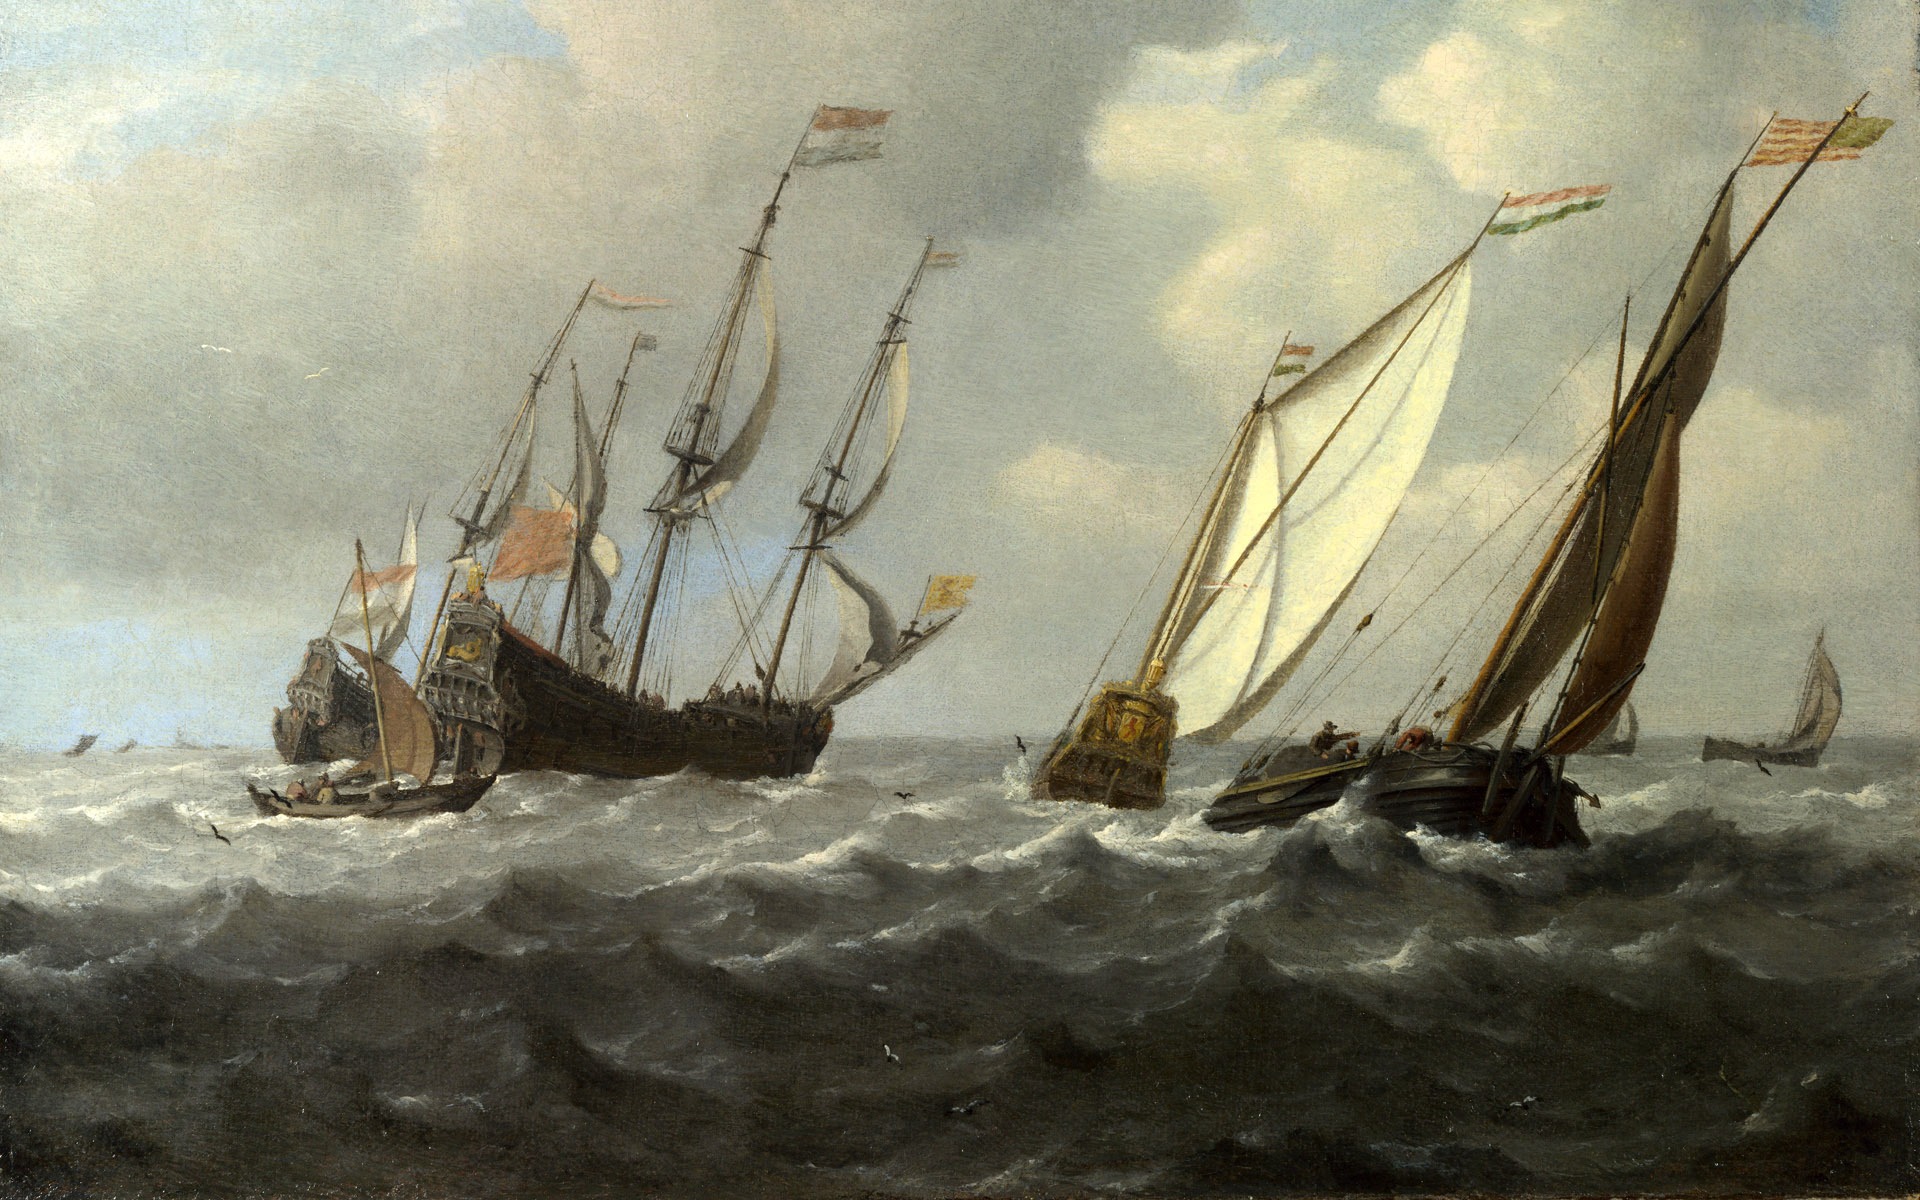 伦敦画廊帆船 壁纸(二)1 - 1920x1200